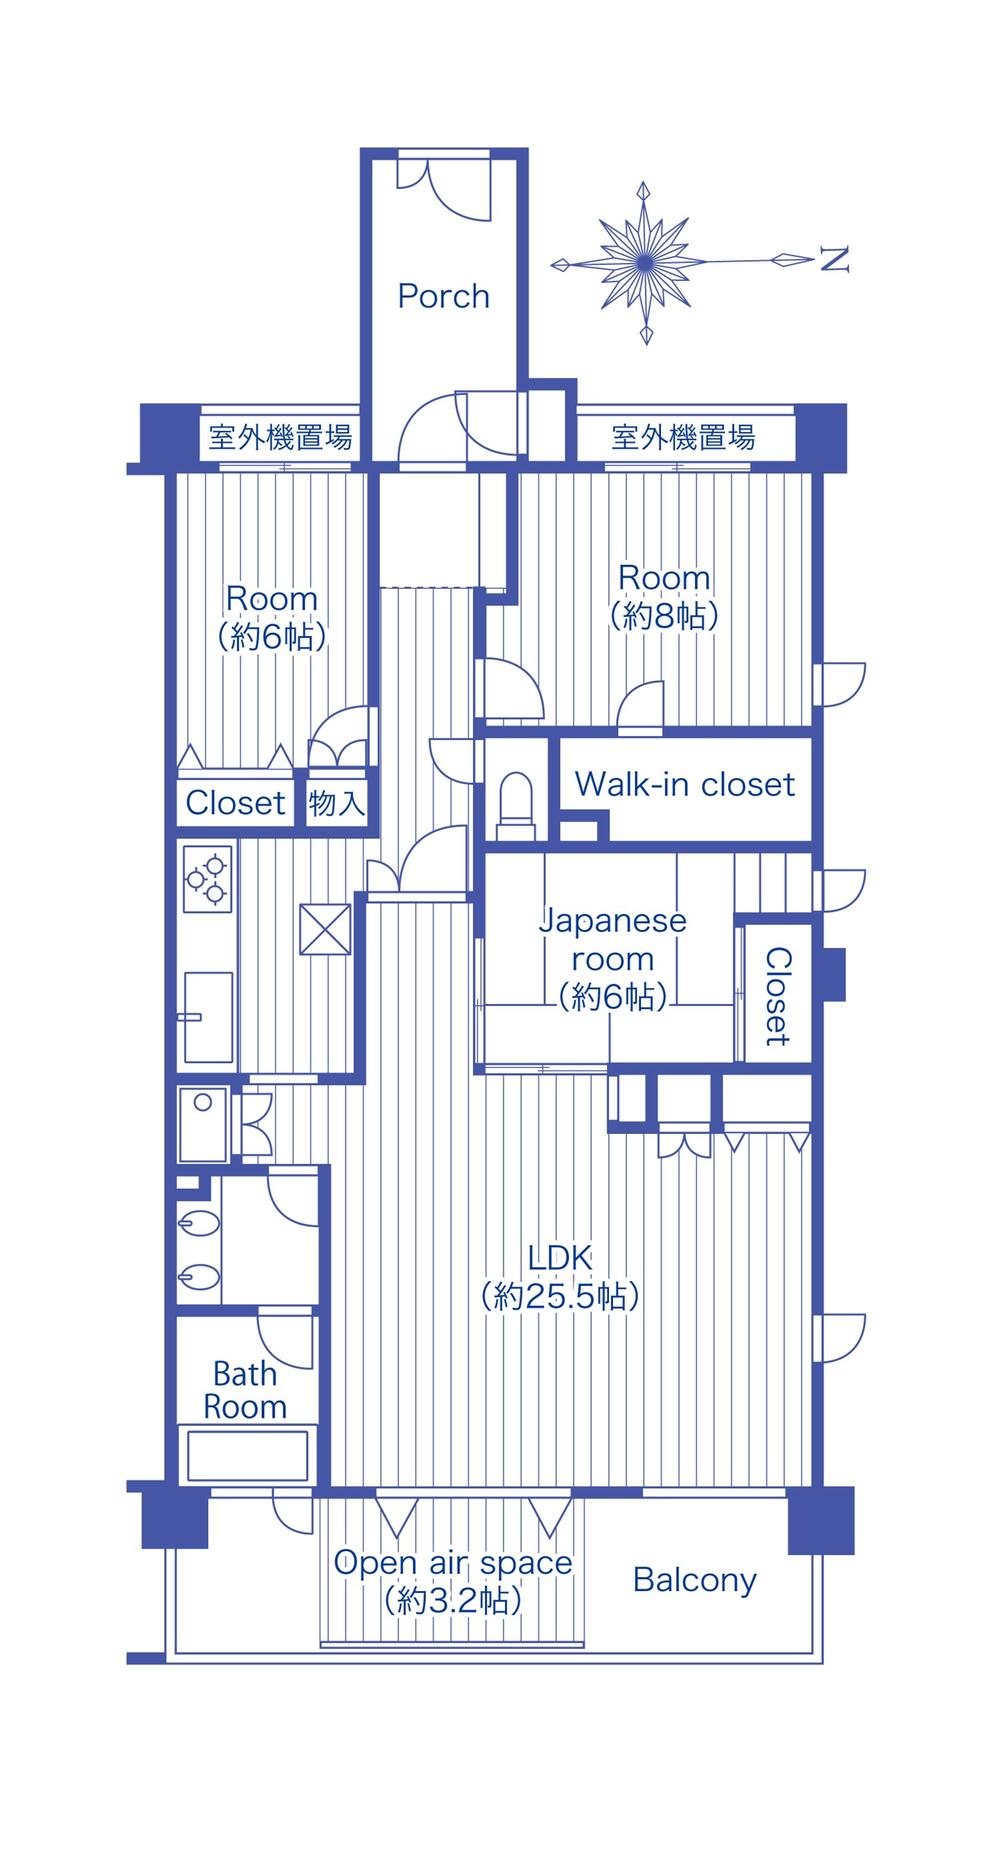 Floor plan. 3LDK, Price 34,500,000 yen, The area occupied 101.6 sq m , Balcony area 10.22 sq m floor plan